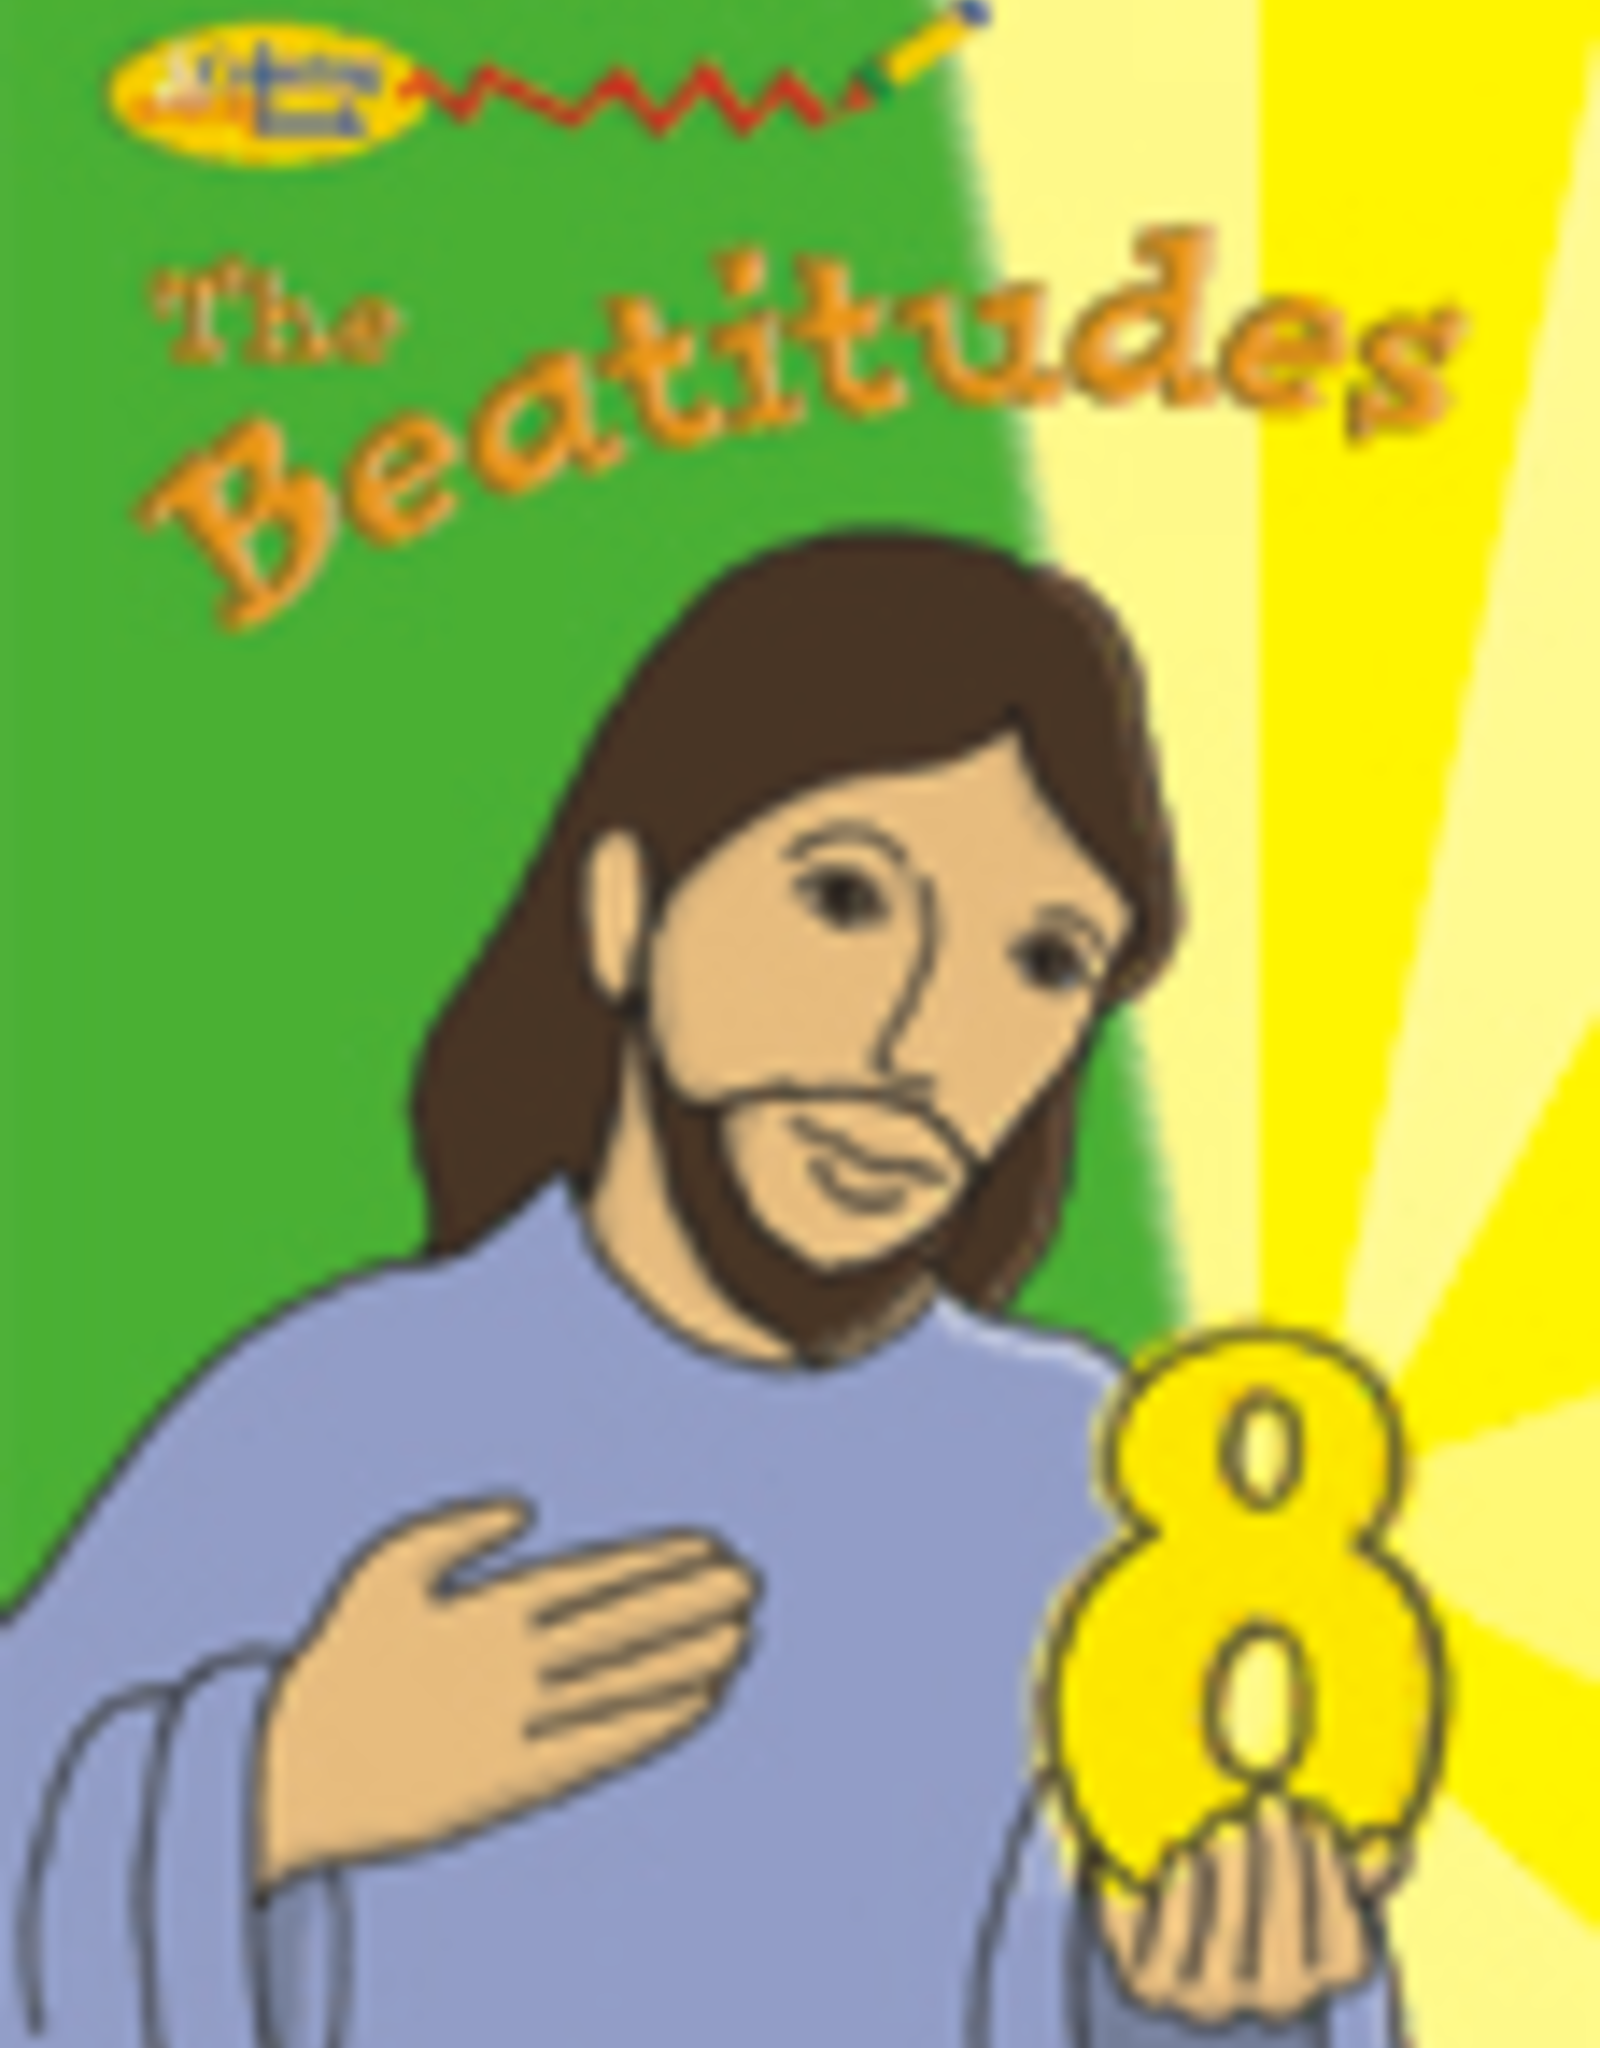 beatitudes for kids catholic